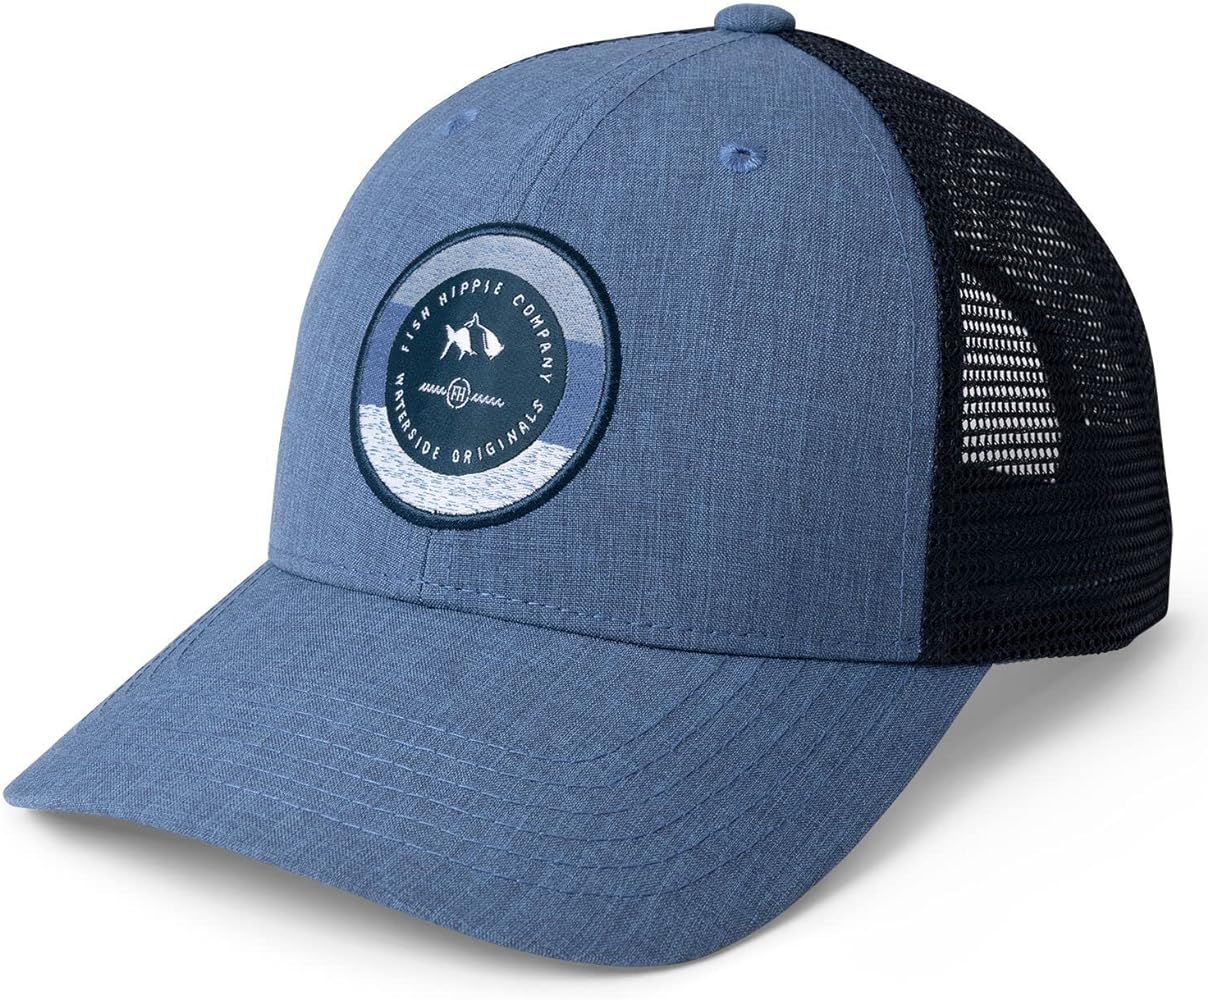 Fish Hippie Informer Trucker Hat Blue OS | Amazon (US)